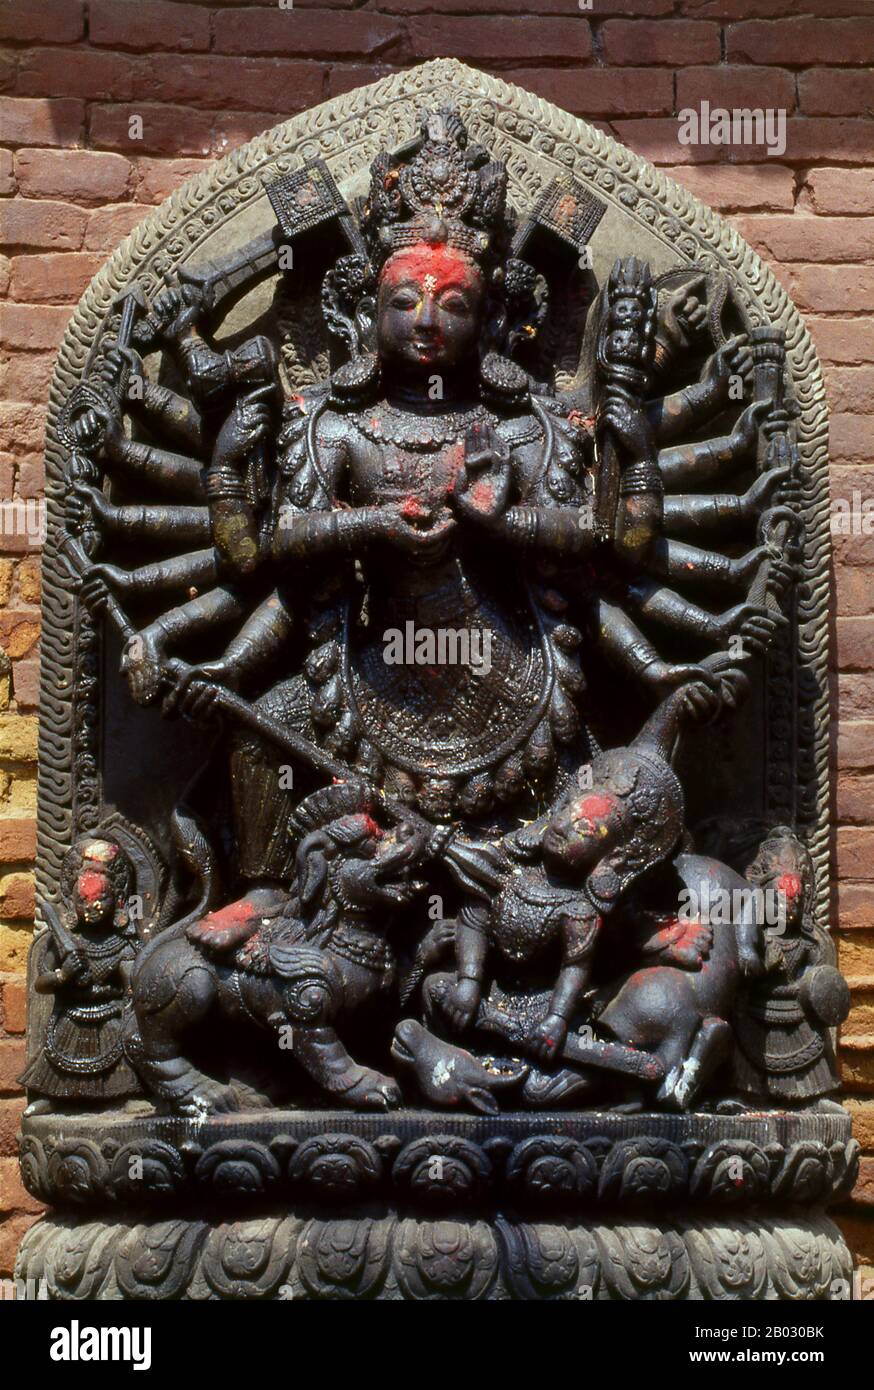 Kālī è la dea indù associata all'energia eterna. "Chi distrugge". Il nome Kali deriva da kāla, che significa nero, tempo, morte, signore della morte, Shiva. Kali significa "il nero". Poiché Shiva è chiamata Kāla - il tempo eterno, Kālī, la sua consorte, significa anche 'Tempo' o 'morte' (come nel tempo è venuto). Quindi, Kali è considerata la dea del tempo e del cambiamento. Anche se talvolta presentato come oscuro e violento, la sua prima incarnazione come figura di annientamento ha ancora qualche influenza. Varie cosmologie Hindu Shakta, così come credenze tantriche Shakta, la adorano come il massimo realit Foto Stock